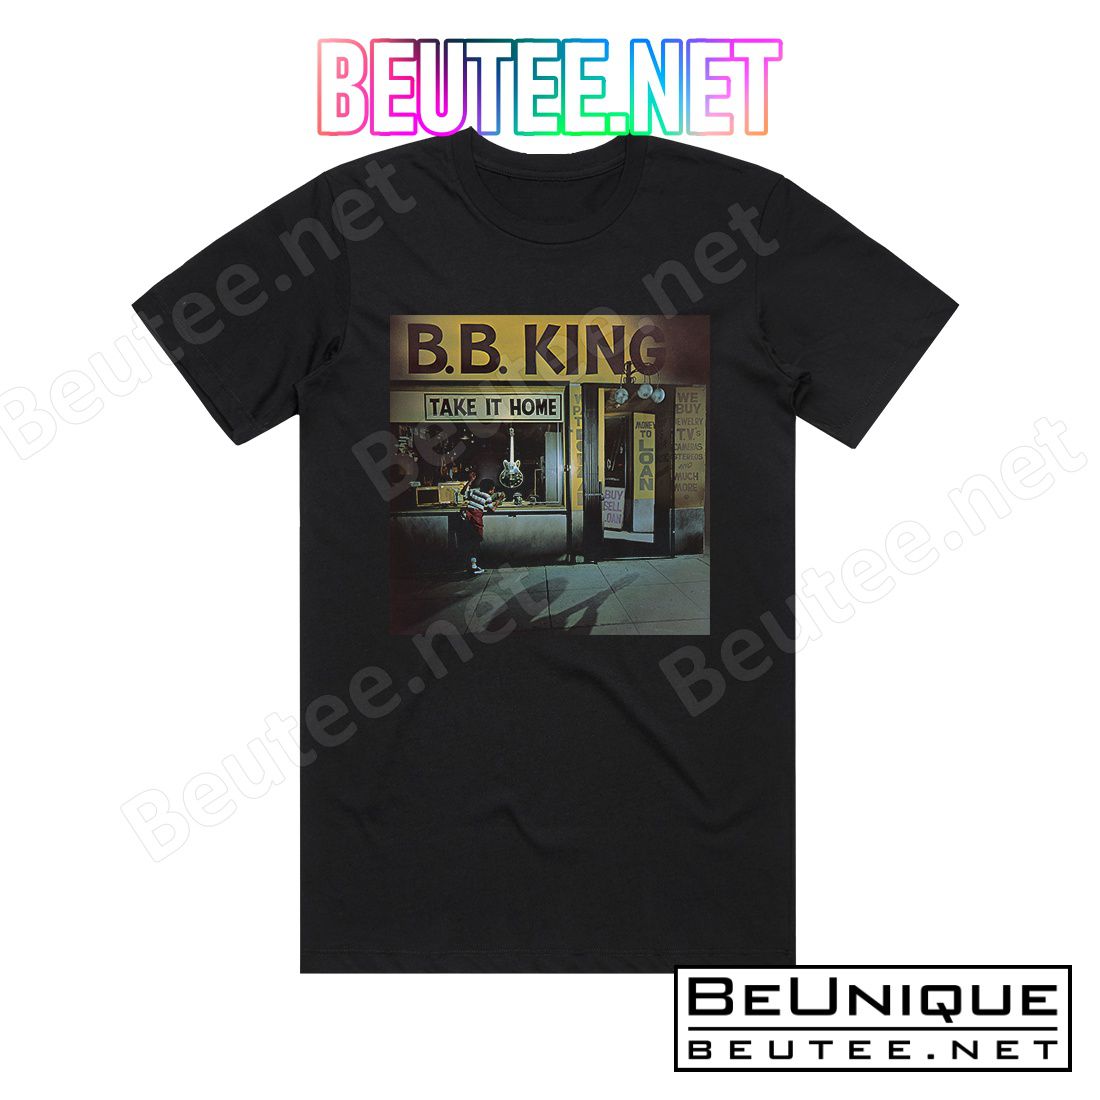 BB King Take It Home Album Cover T-Shirt